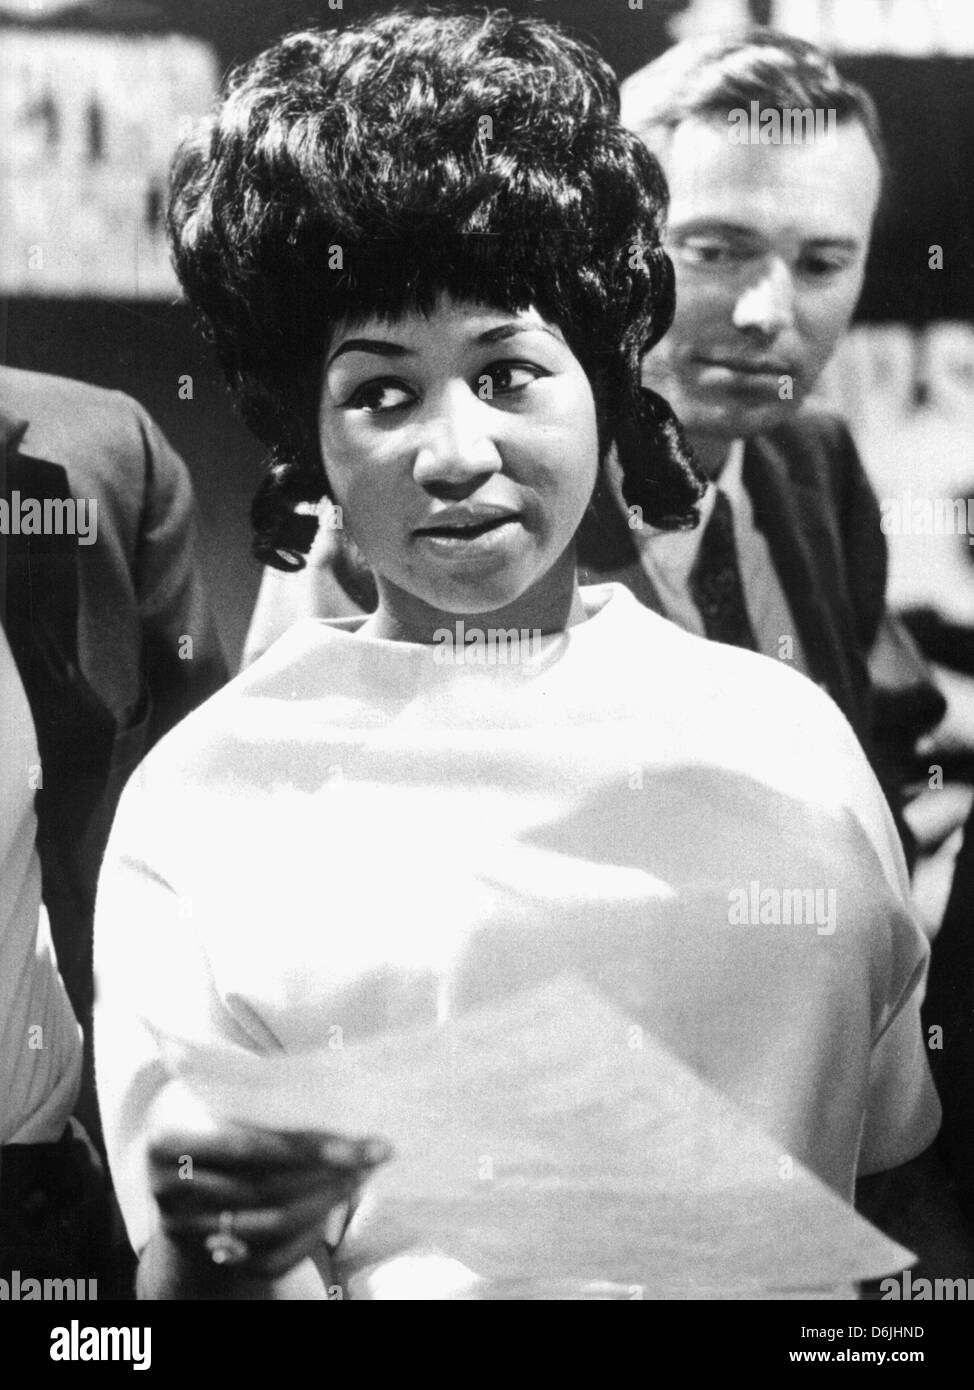 (Archivo) - Un dpa fotografía de archivo fechada el 13 de mayo de 1968 muestra el cantante de soul estadounidense Aretha Franklin durante la grabación de un programa de televisión en un estudio en Colonia, Alemania. El 25 de marzo de 2012 el legendario cantante gira 70. Foto: dpa Foto de stock